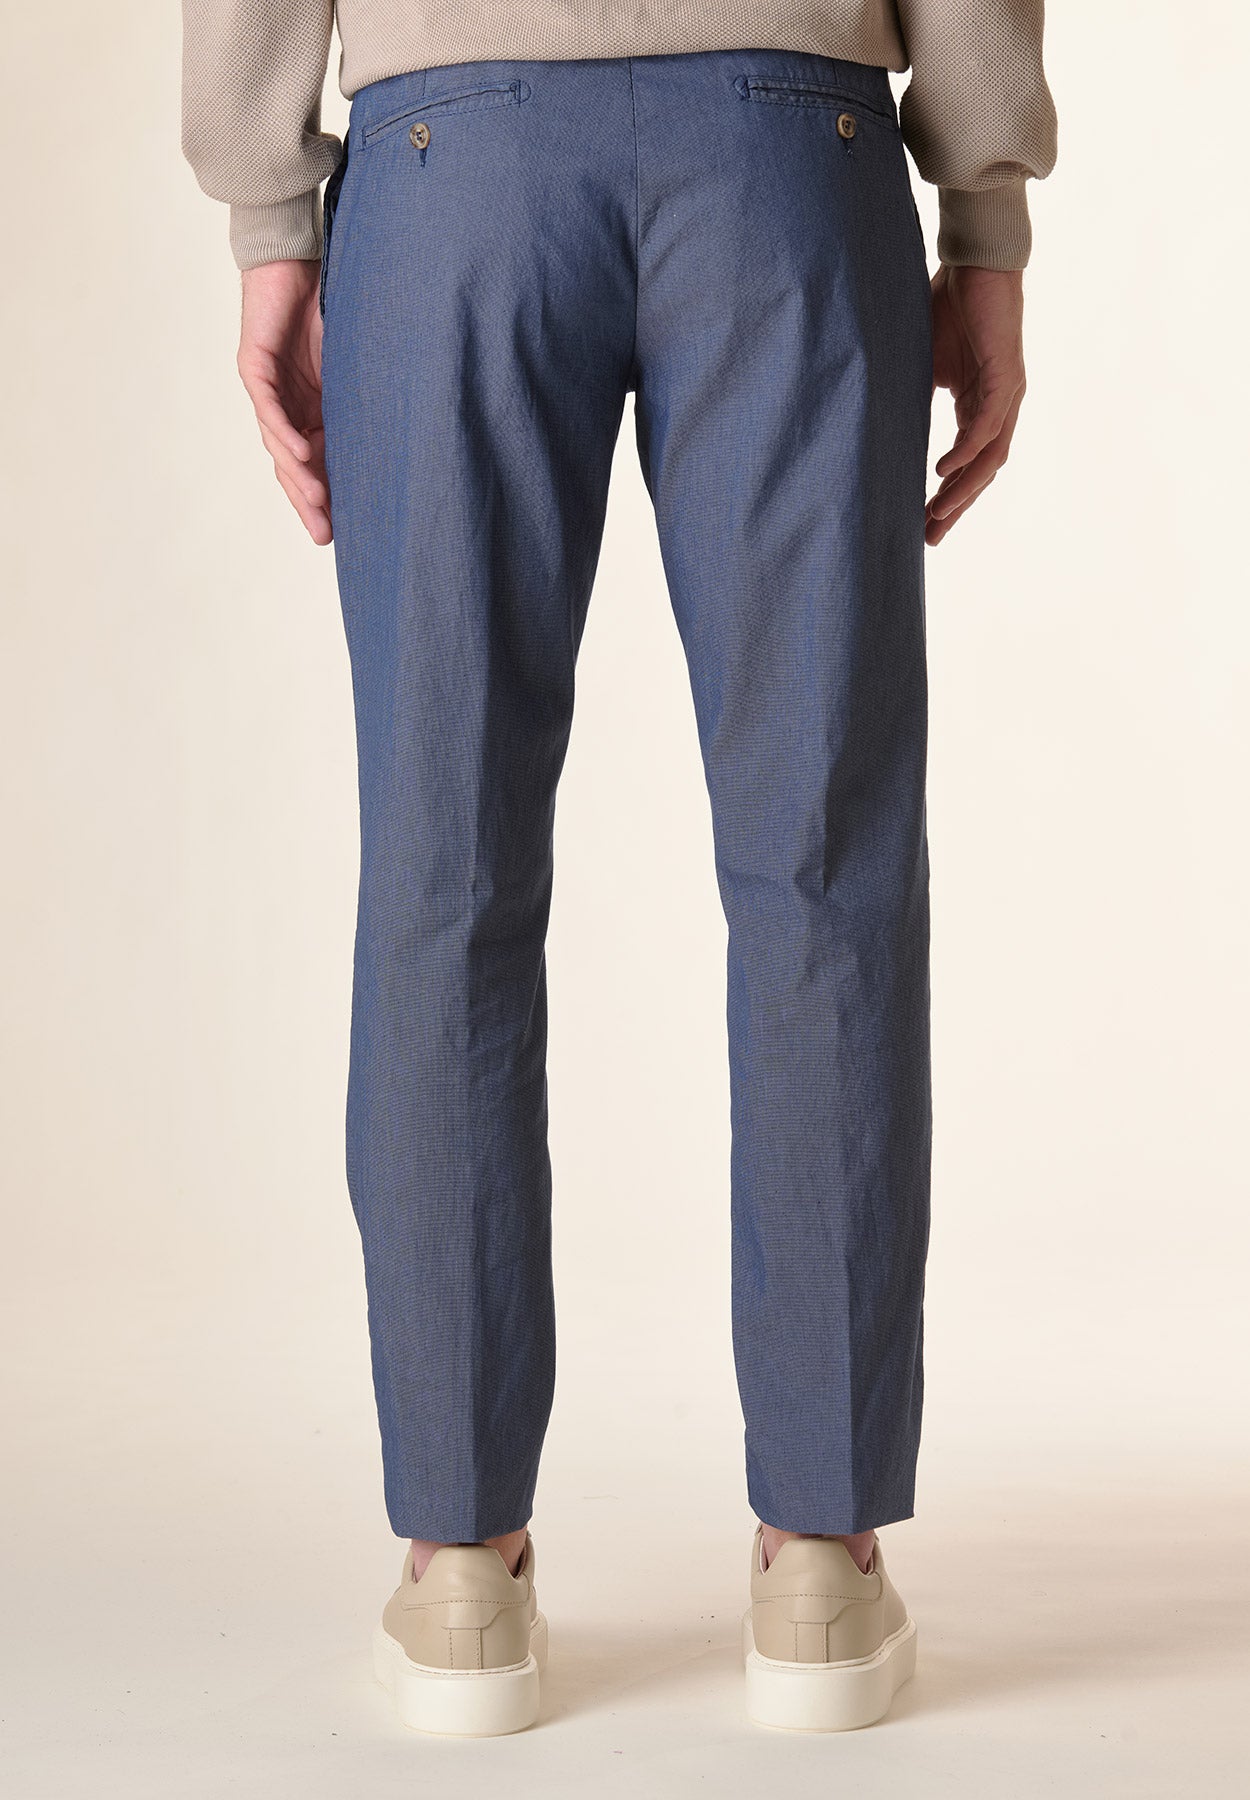 Pantalone blu microarmatura cotone stretch regular fit